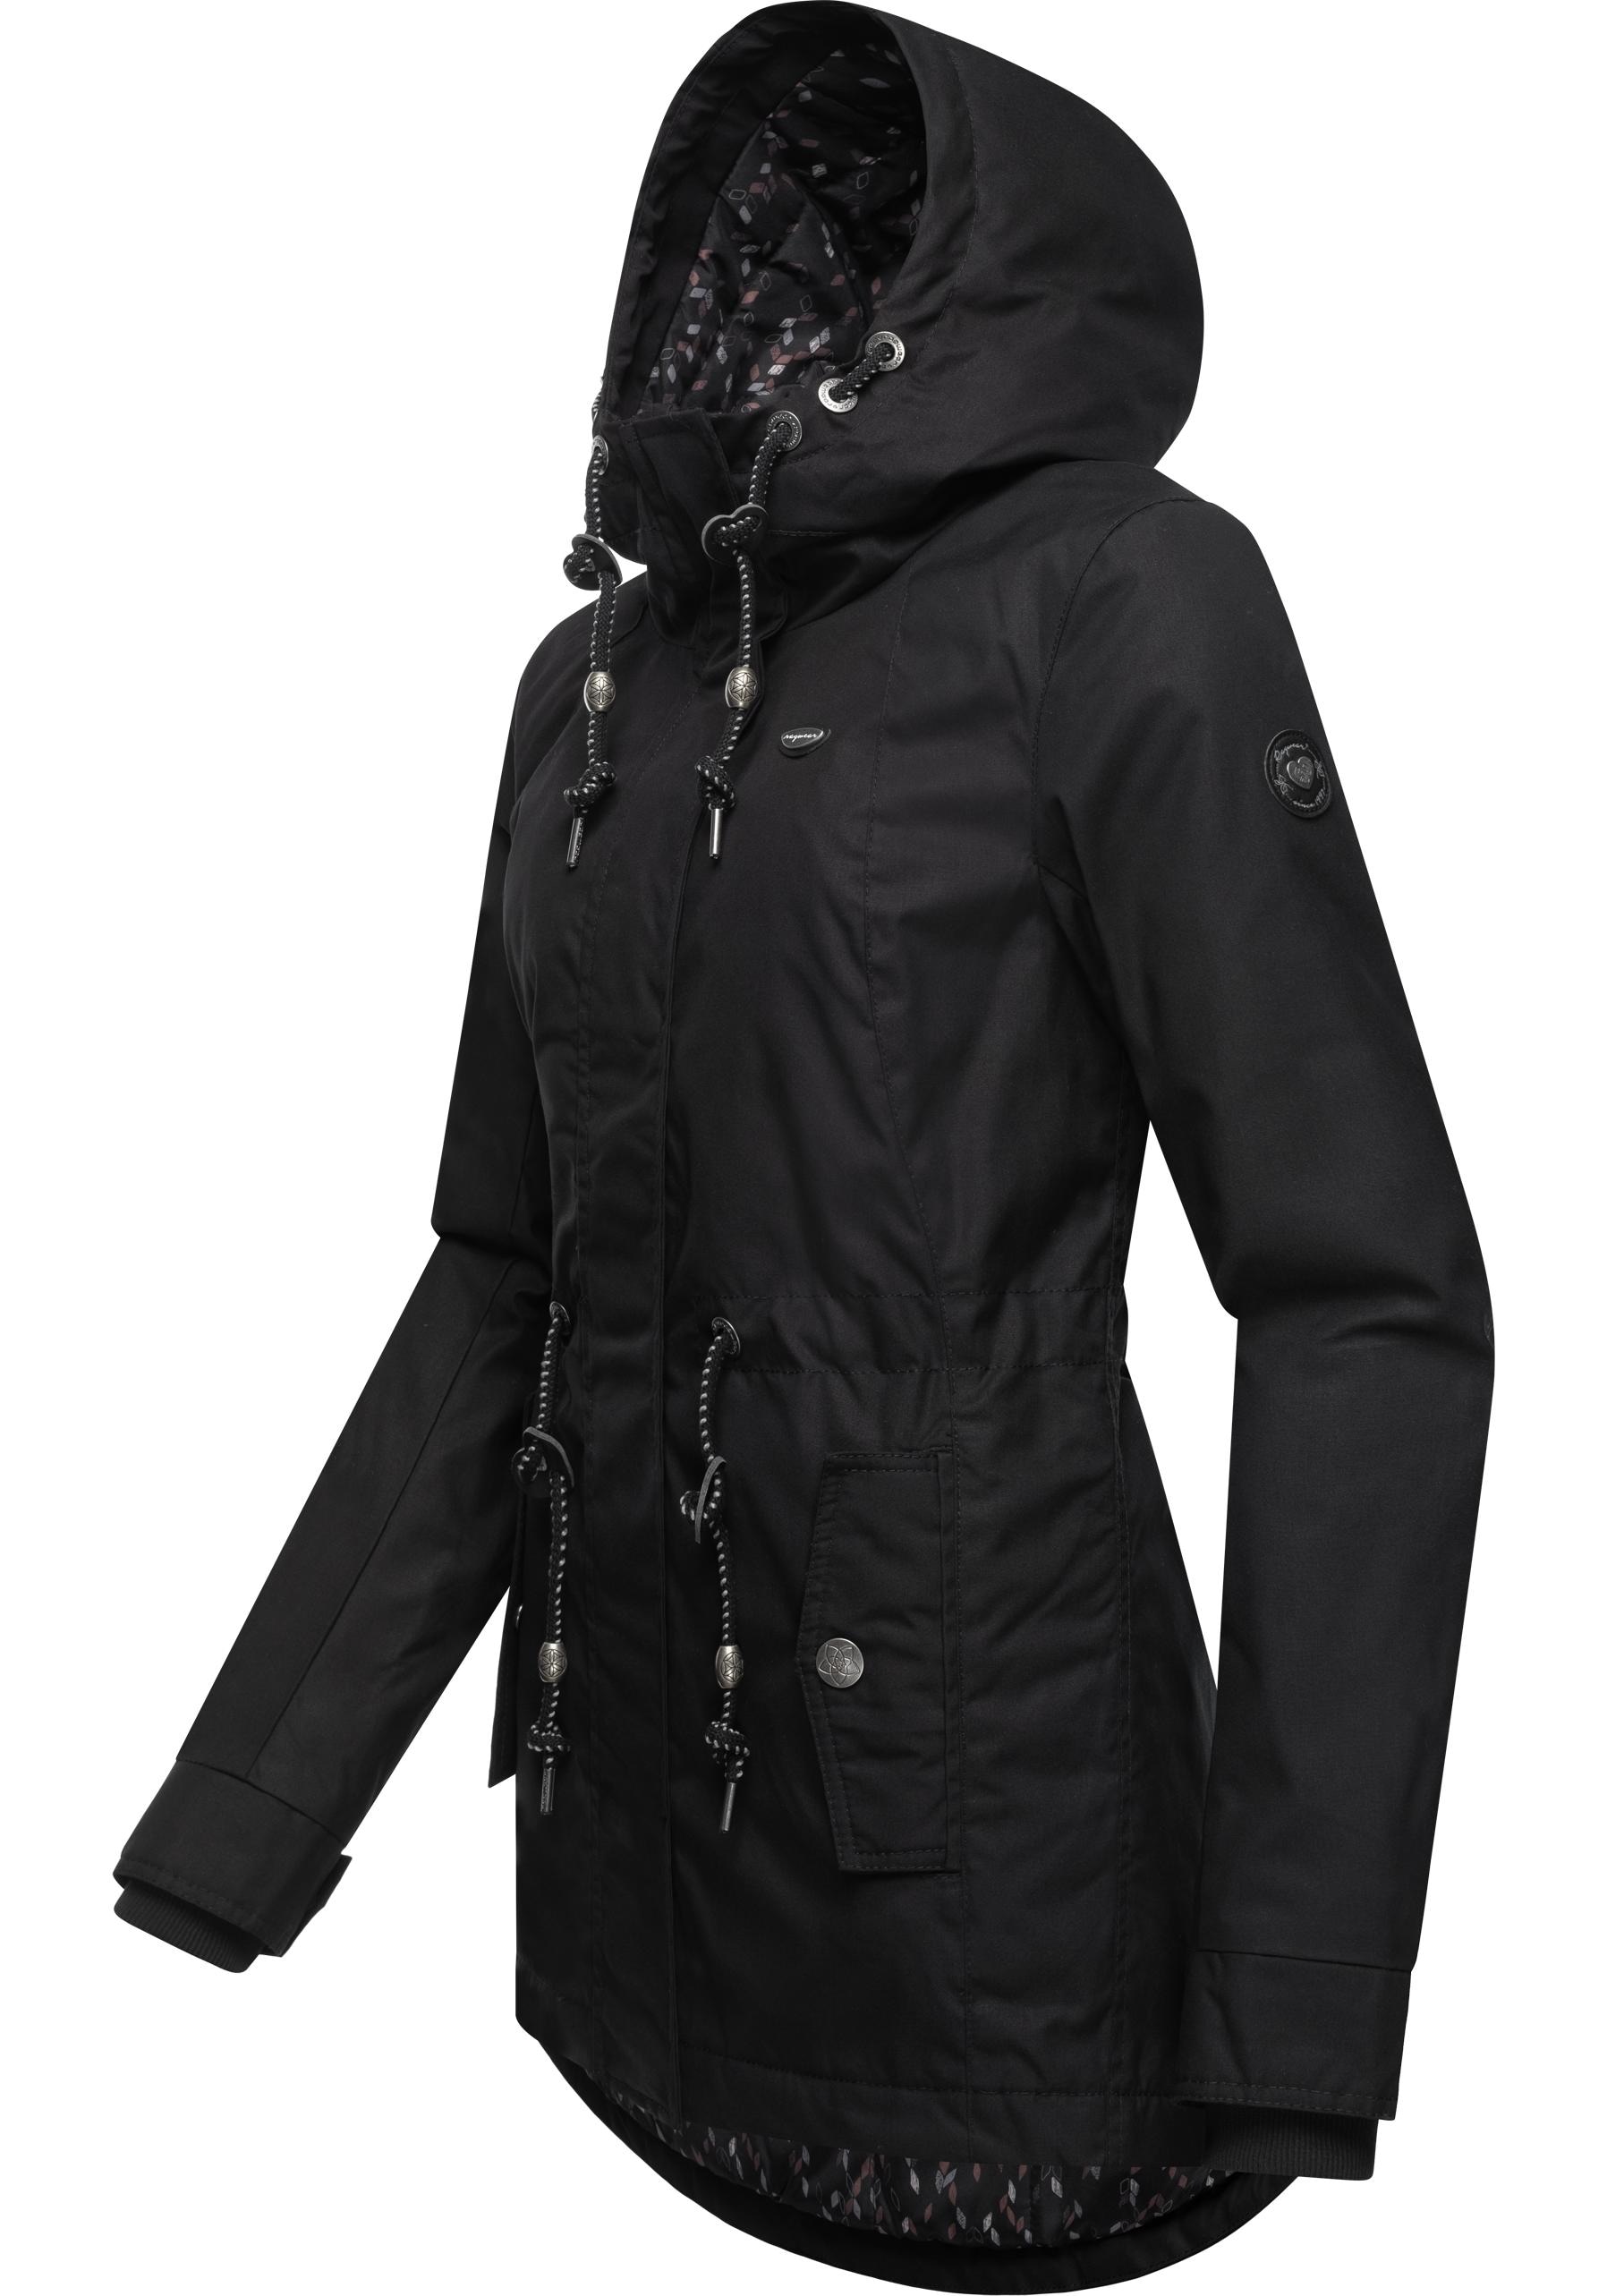 Ragwear Winterjacke »Monadis Black Label«, mit Kapuze, stylischer Winterparka für die kalte Jahreszeit